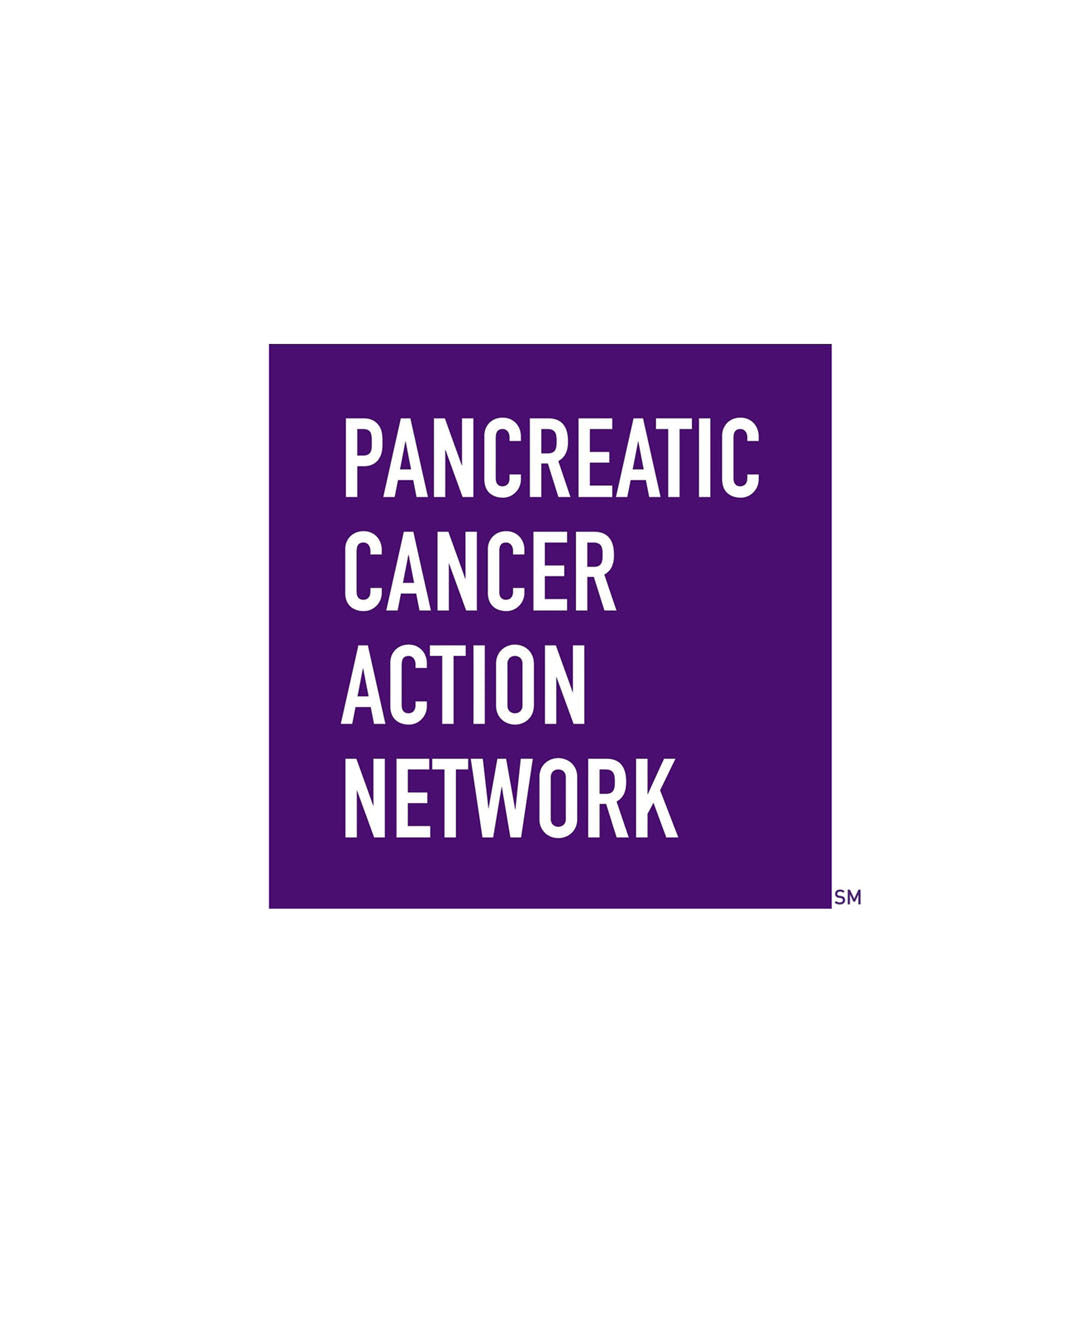 Spinning KOA Warrior Ring to Benefit Pancreatic Cancer